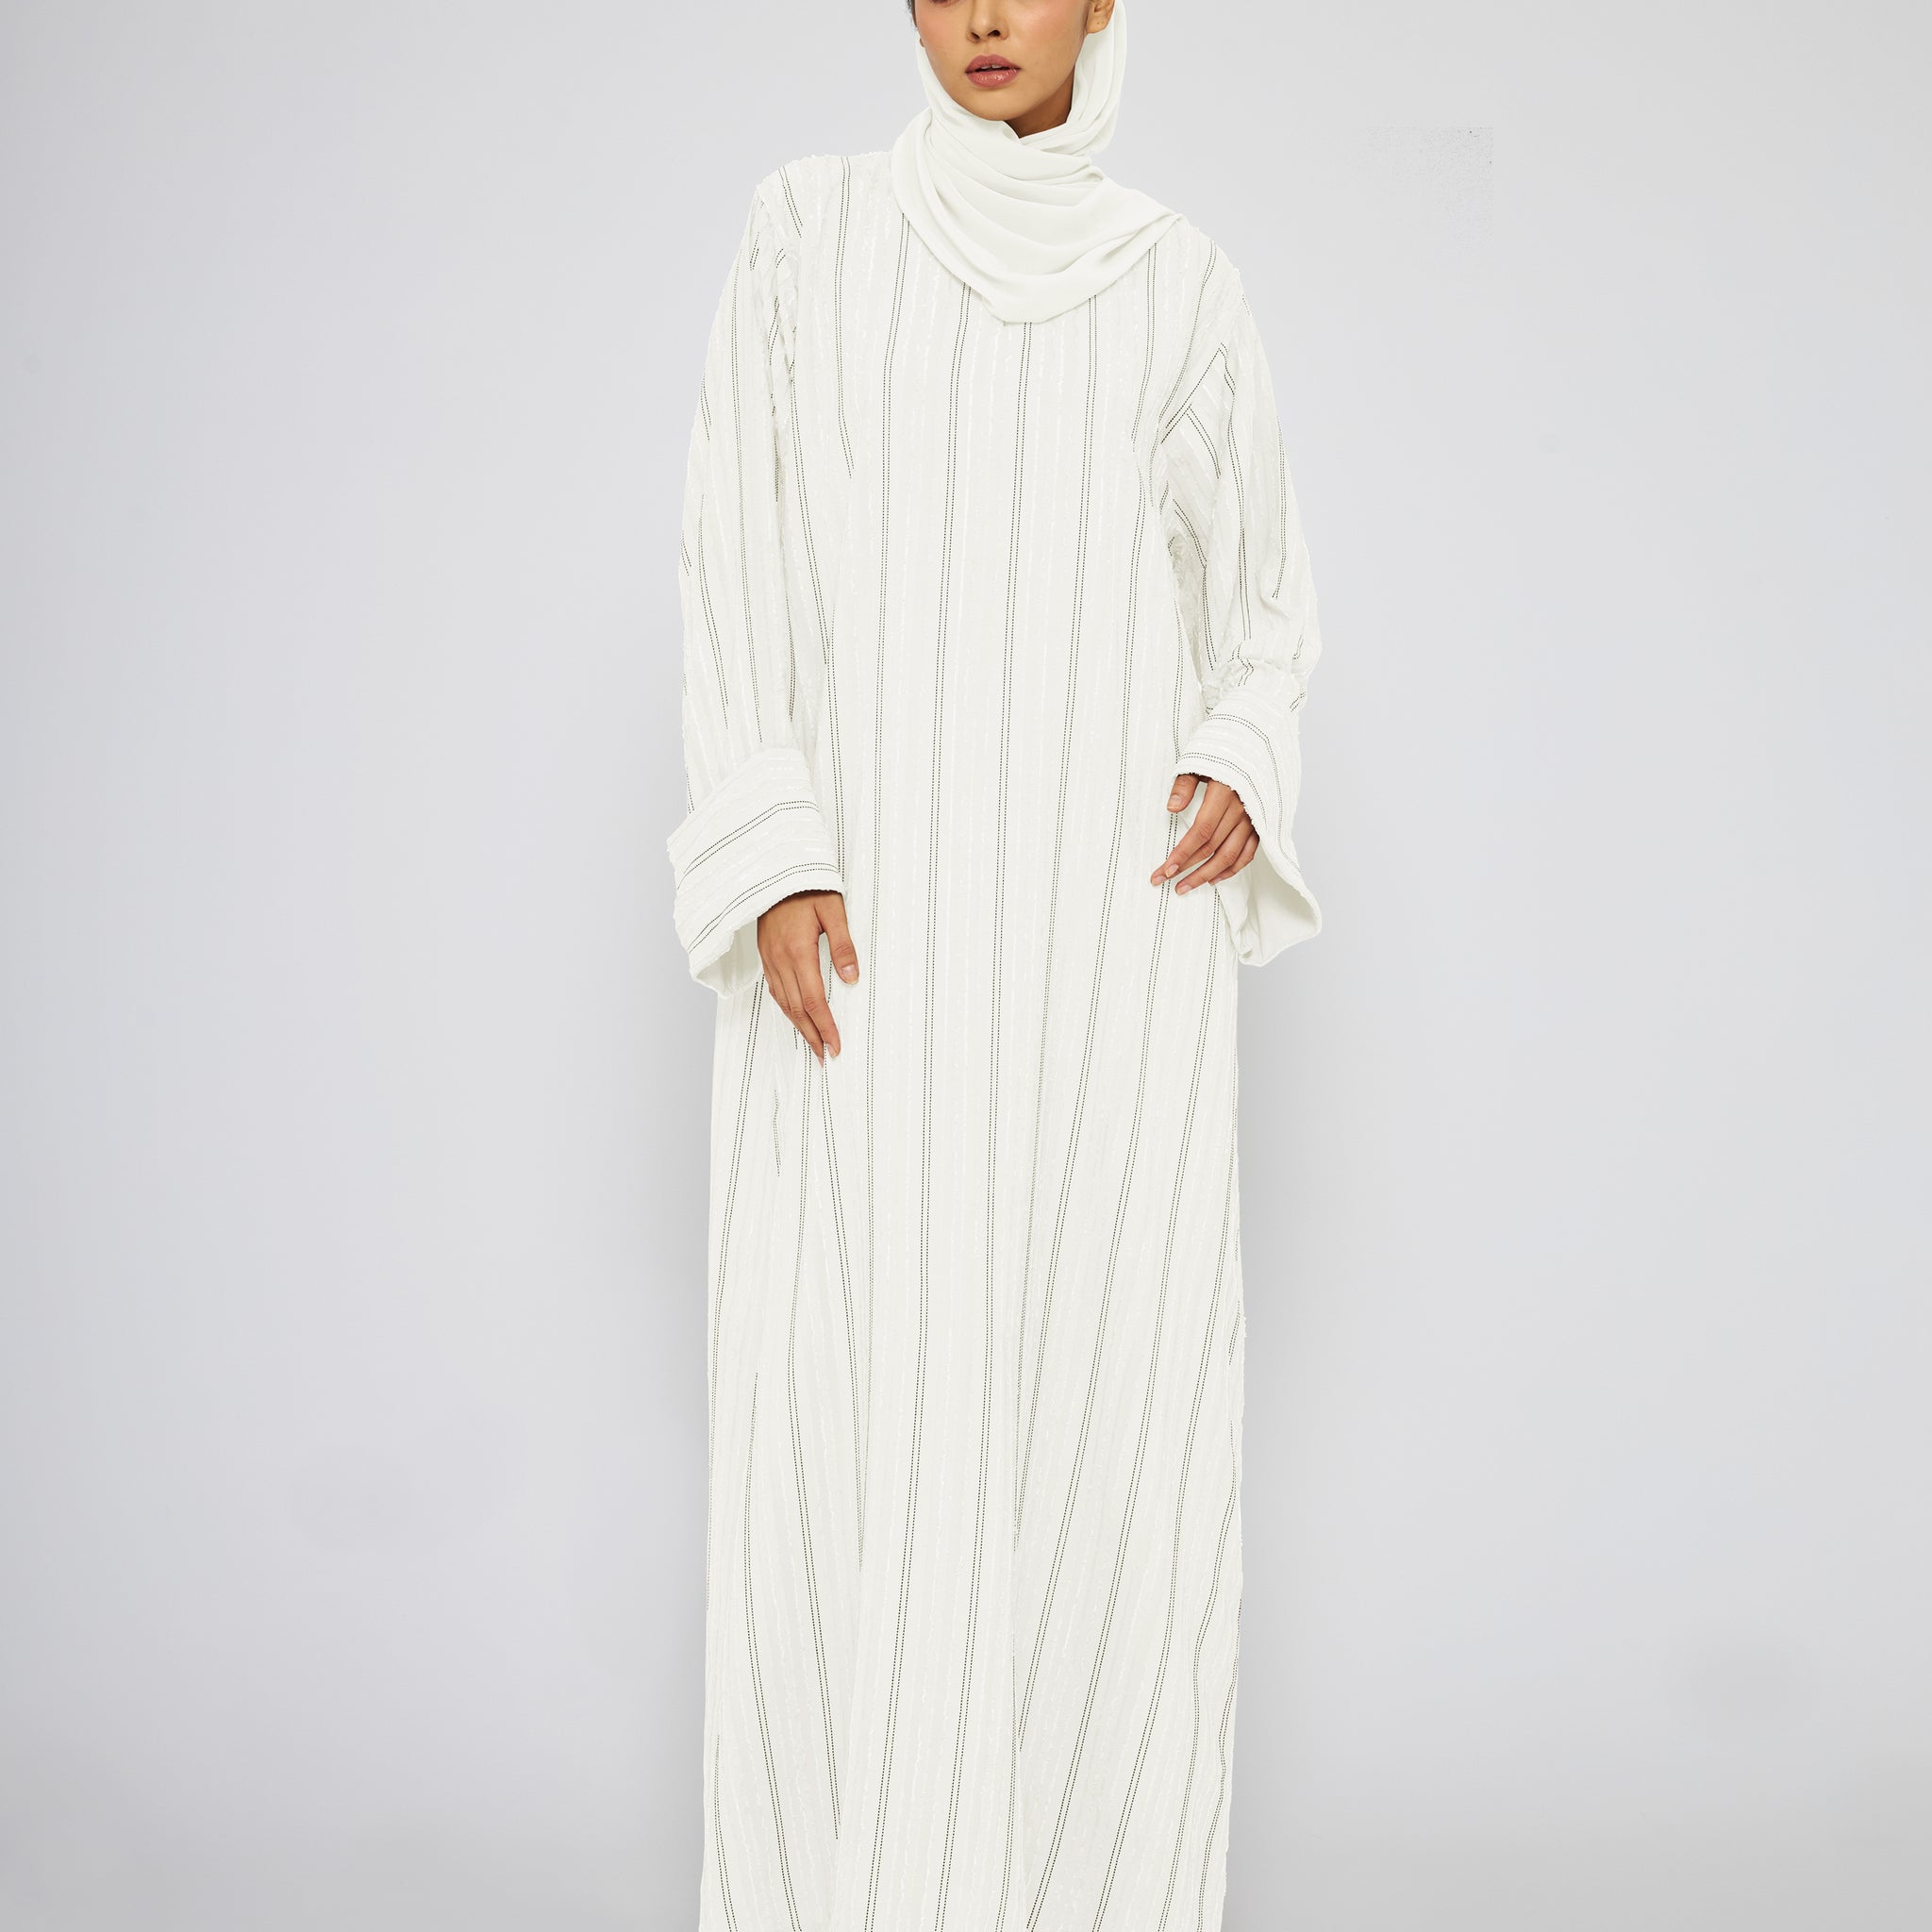 Rahmah Abaya in Off White